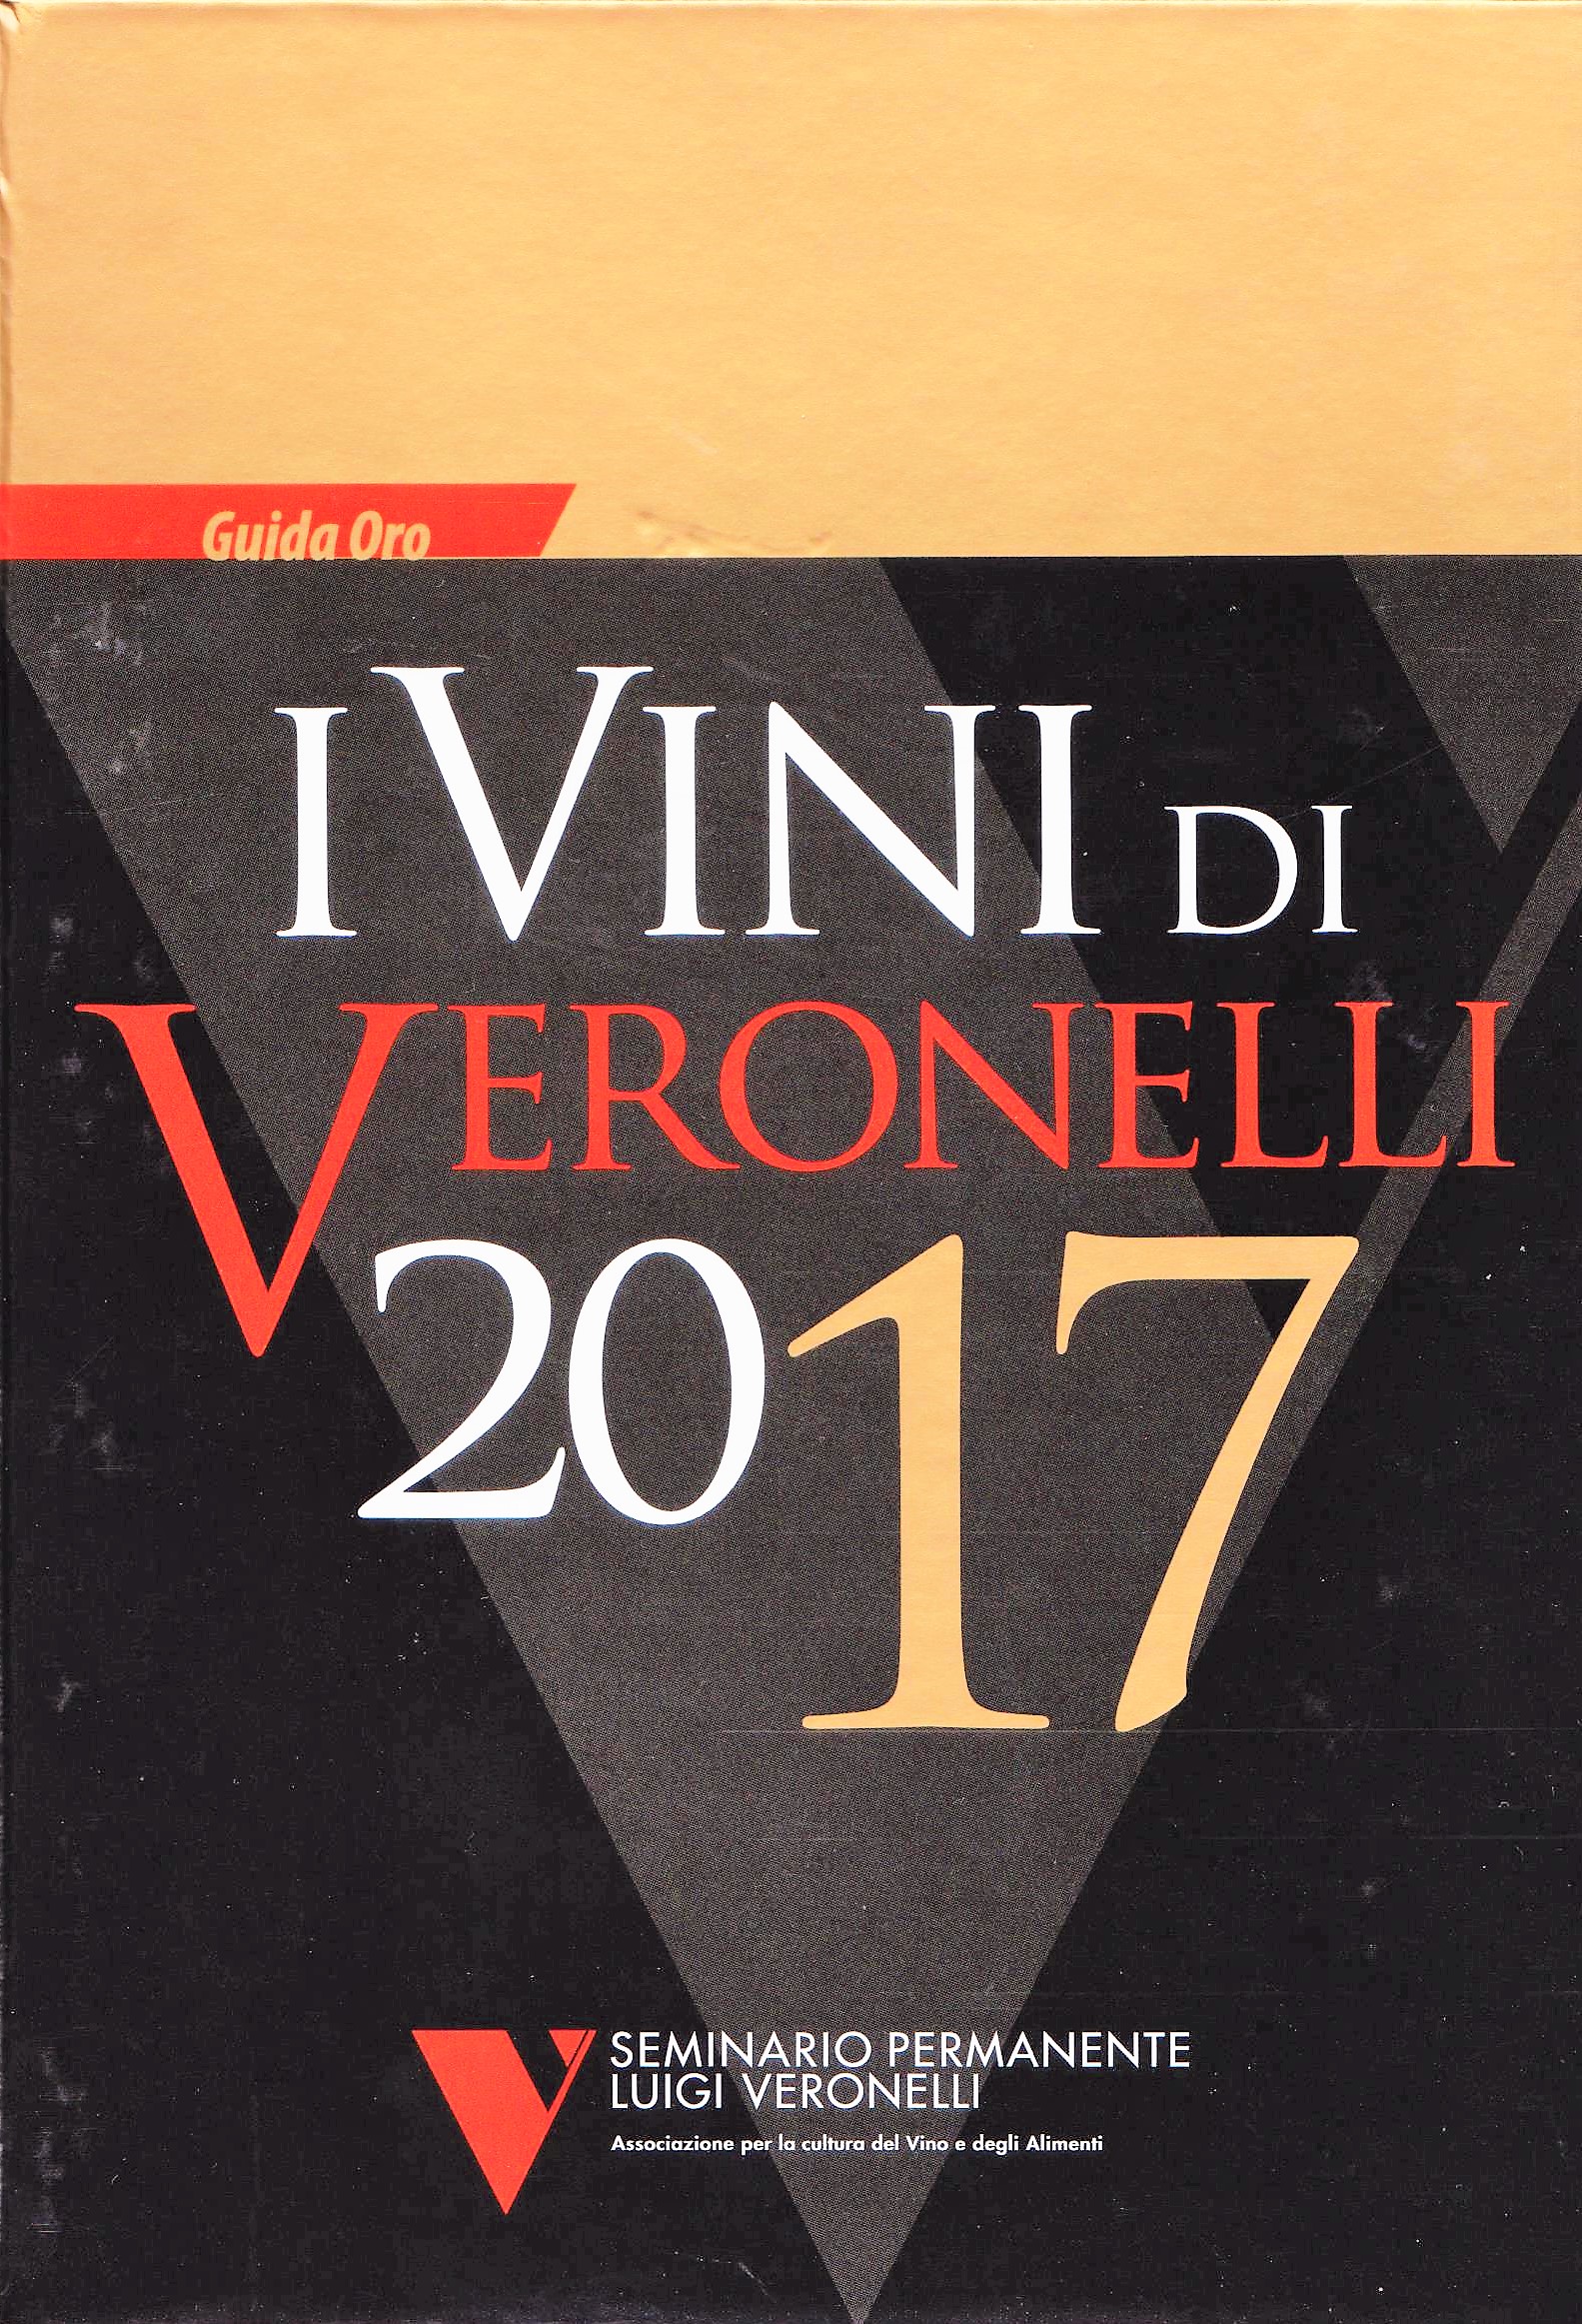 Guida ora - I vini di Veronelli 2017